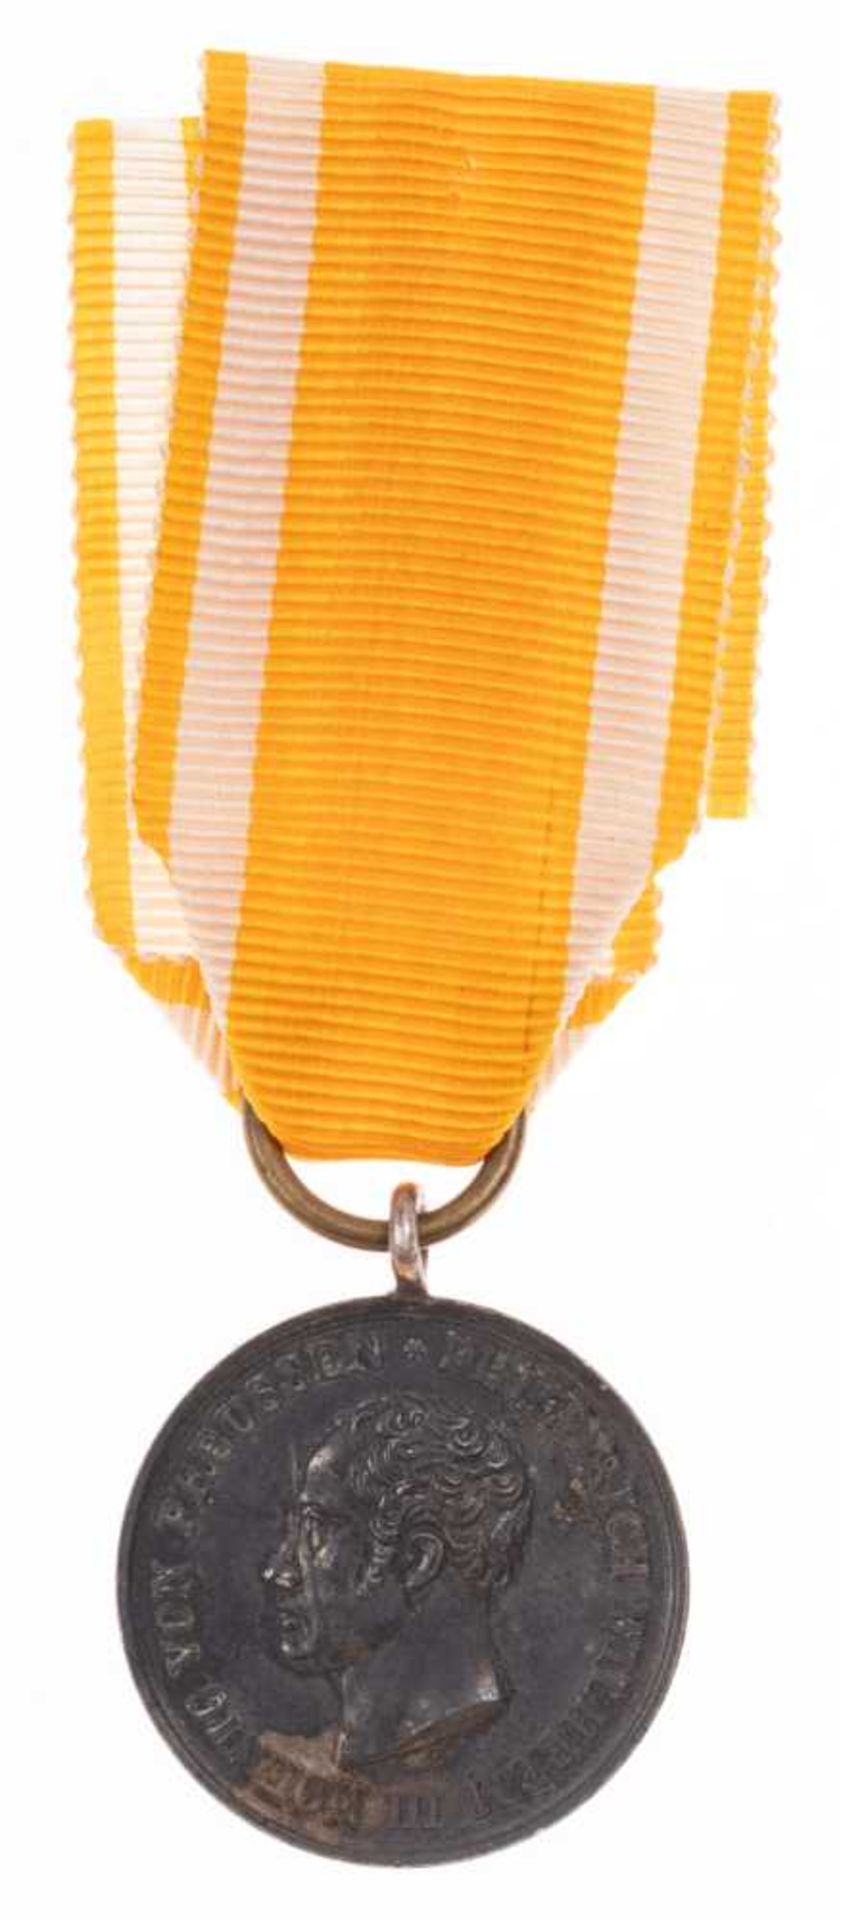 Preußen, Verdienst-Ehrenzeichen für Rettung aus Gefahr, Silber, am Band, OEK 1867, angelaufen, Zusta